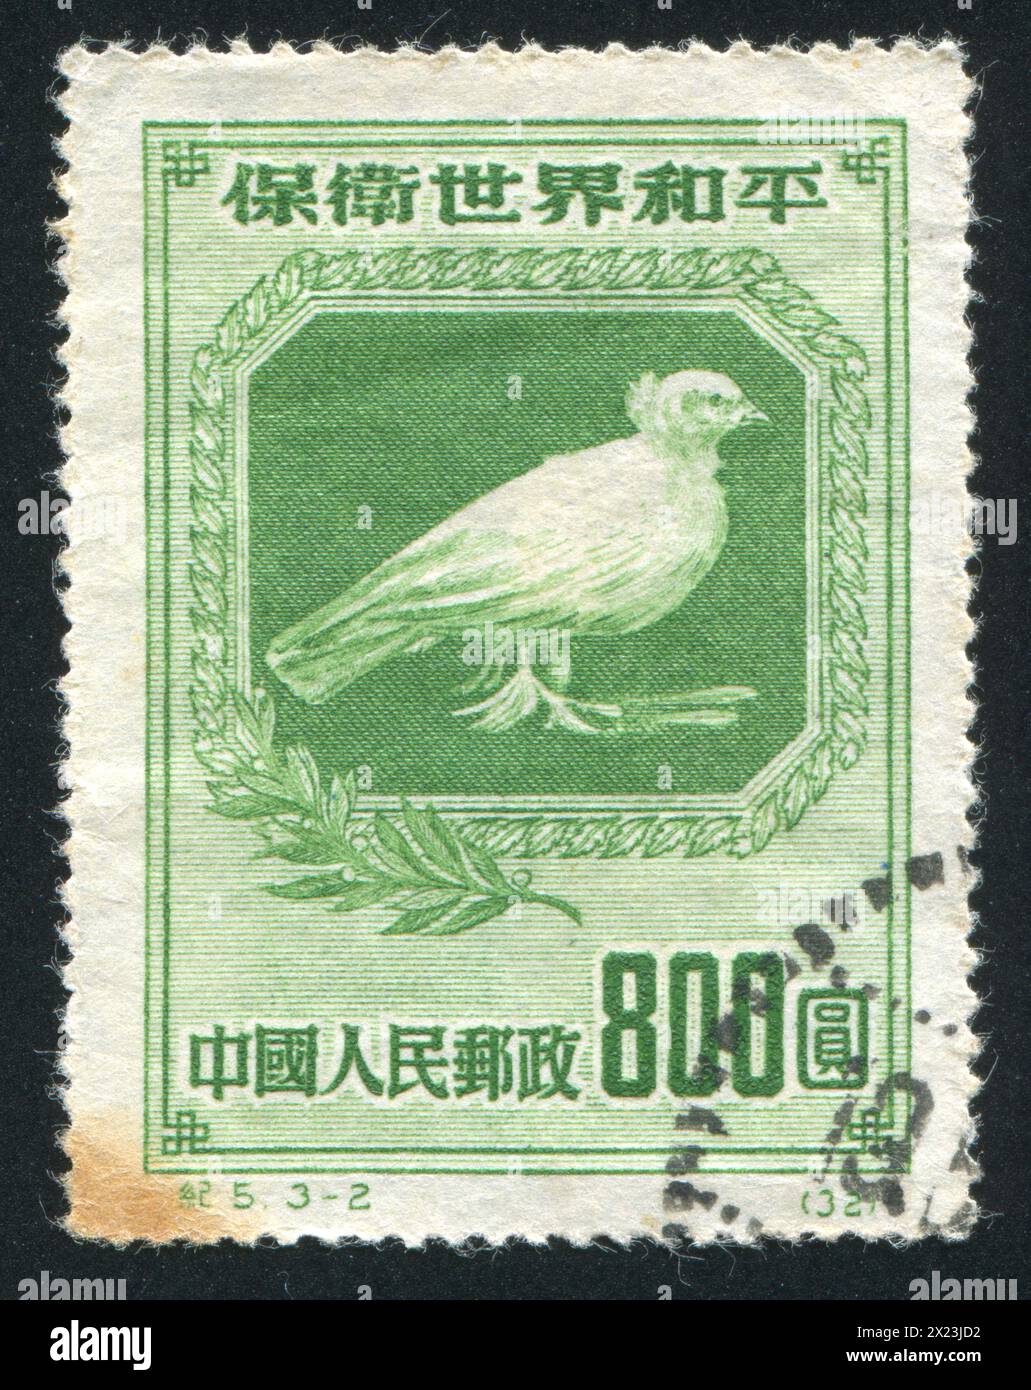 CHINE - VERS 1950 : timbre imprimé par la Chine, montre colombe de la paix par Pablo Picasso, vers 1950 Banque D'Images